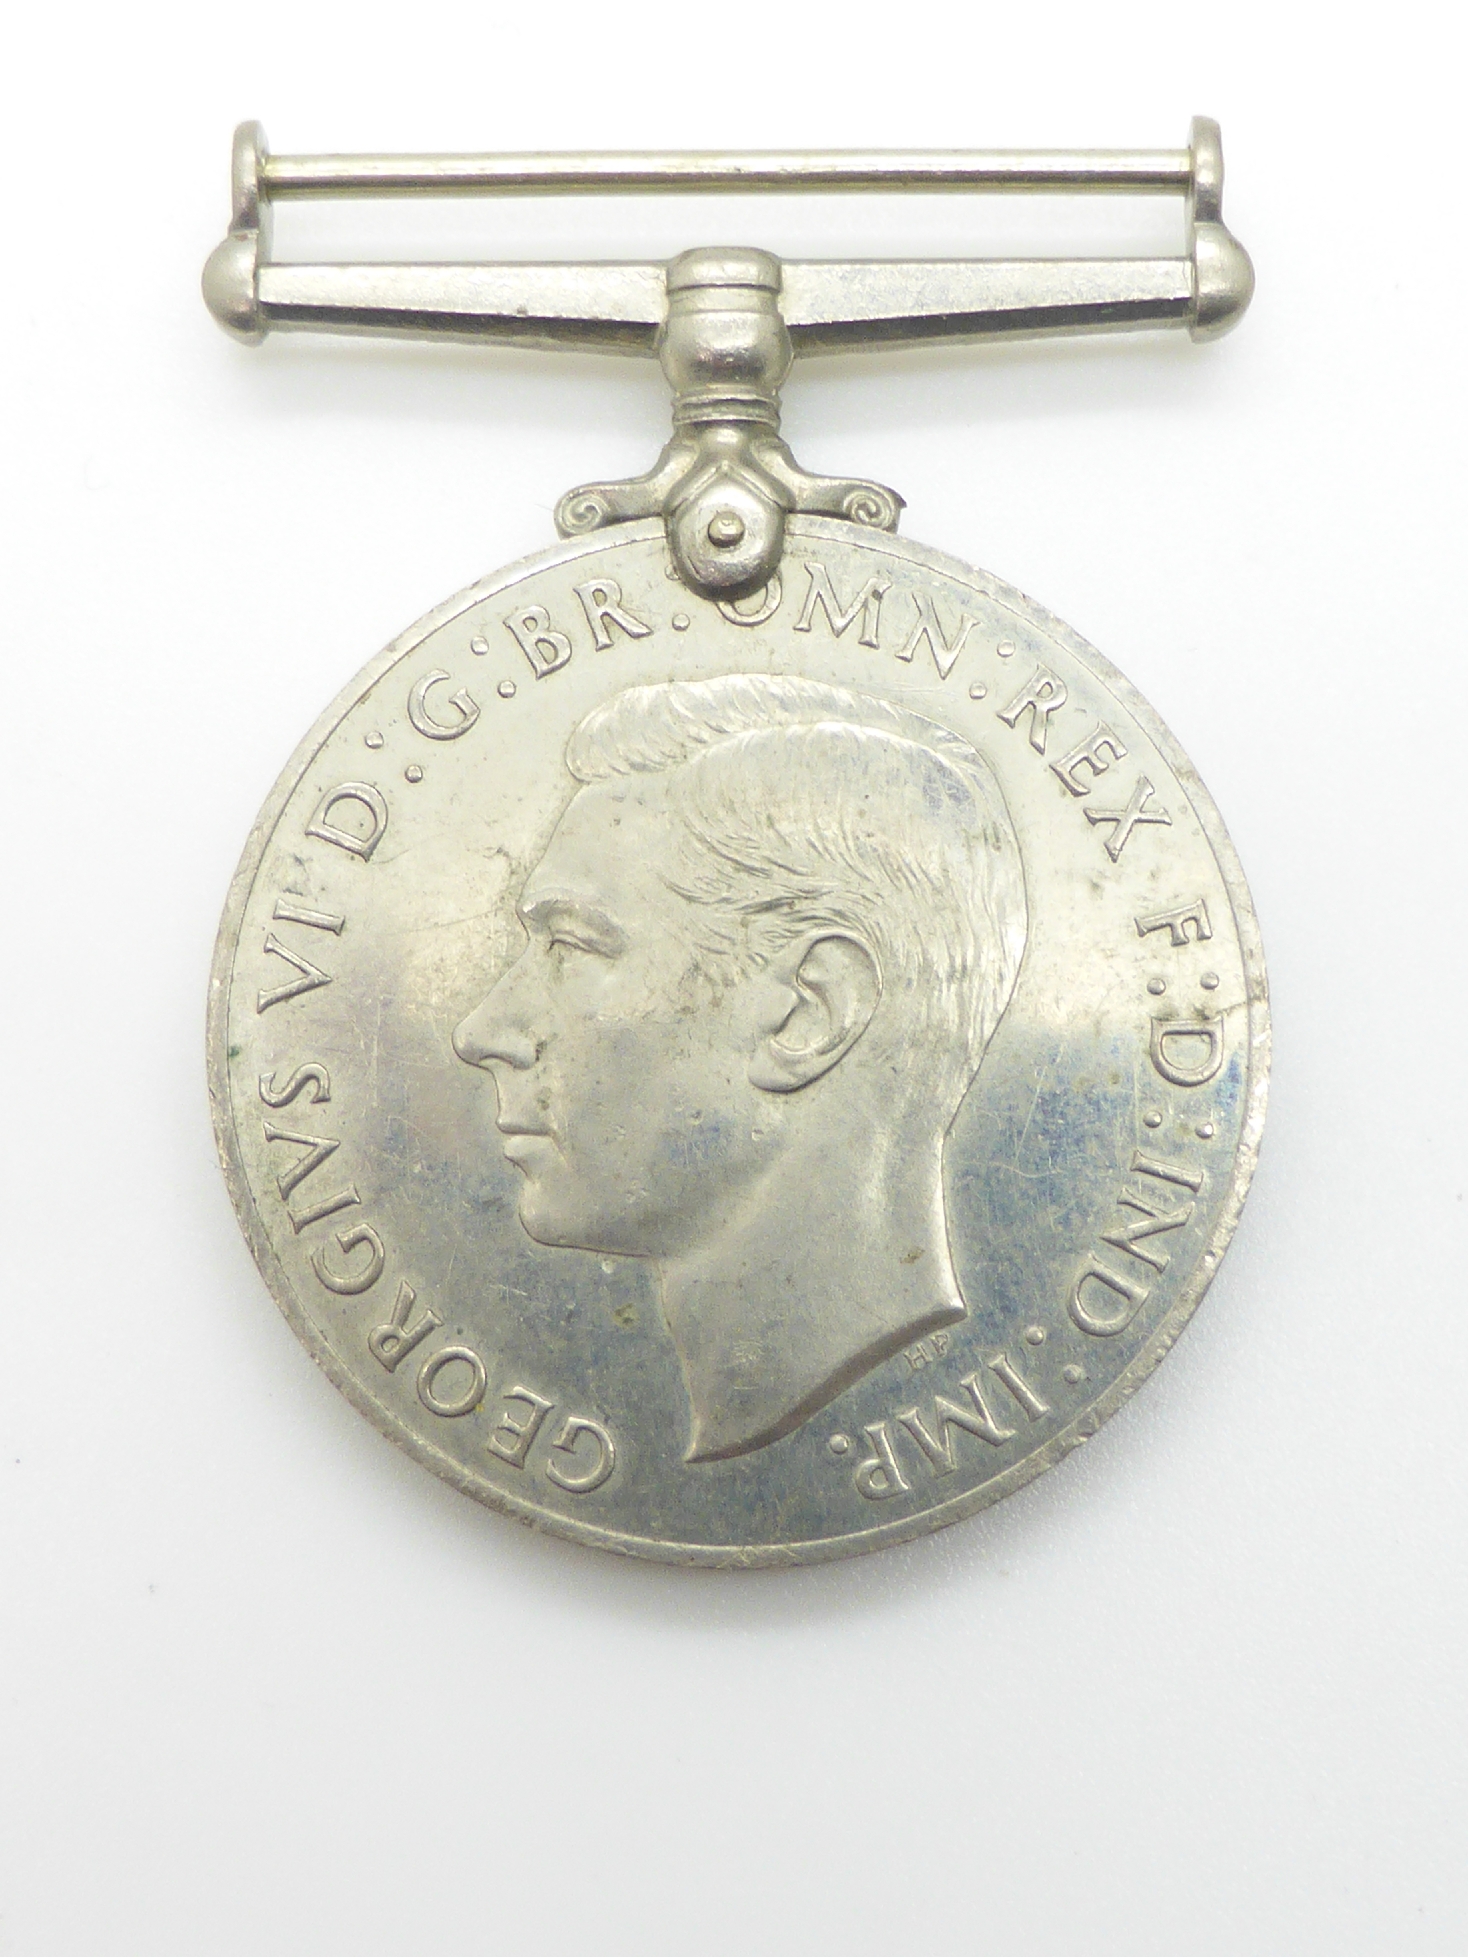 Elizabeth II Imperial Service Medal named to Mrs Jean Margaret Rose together with a WWII War Medal - Image 23 of 47